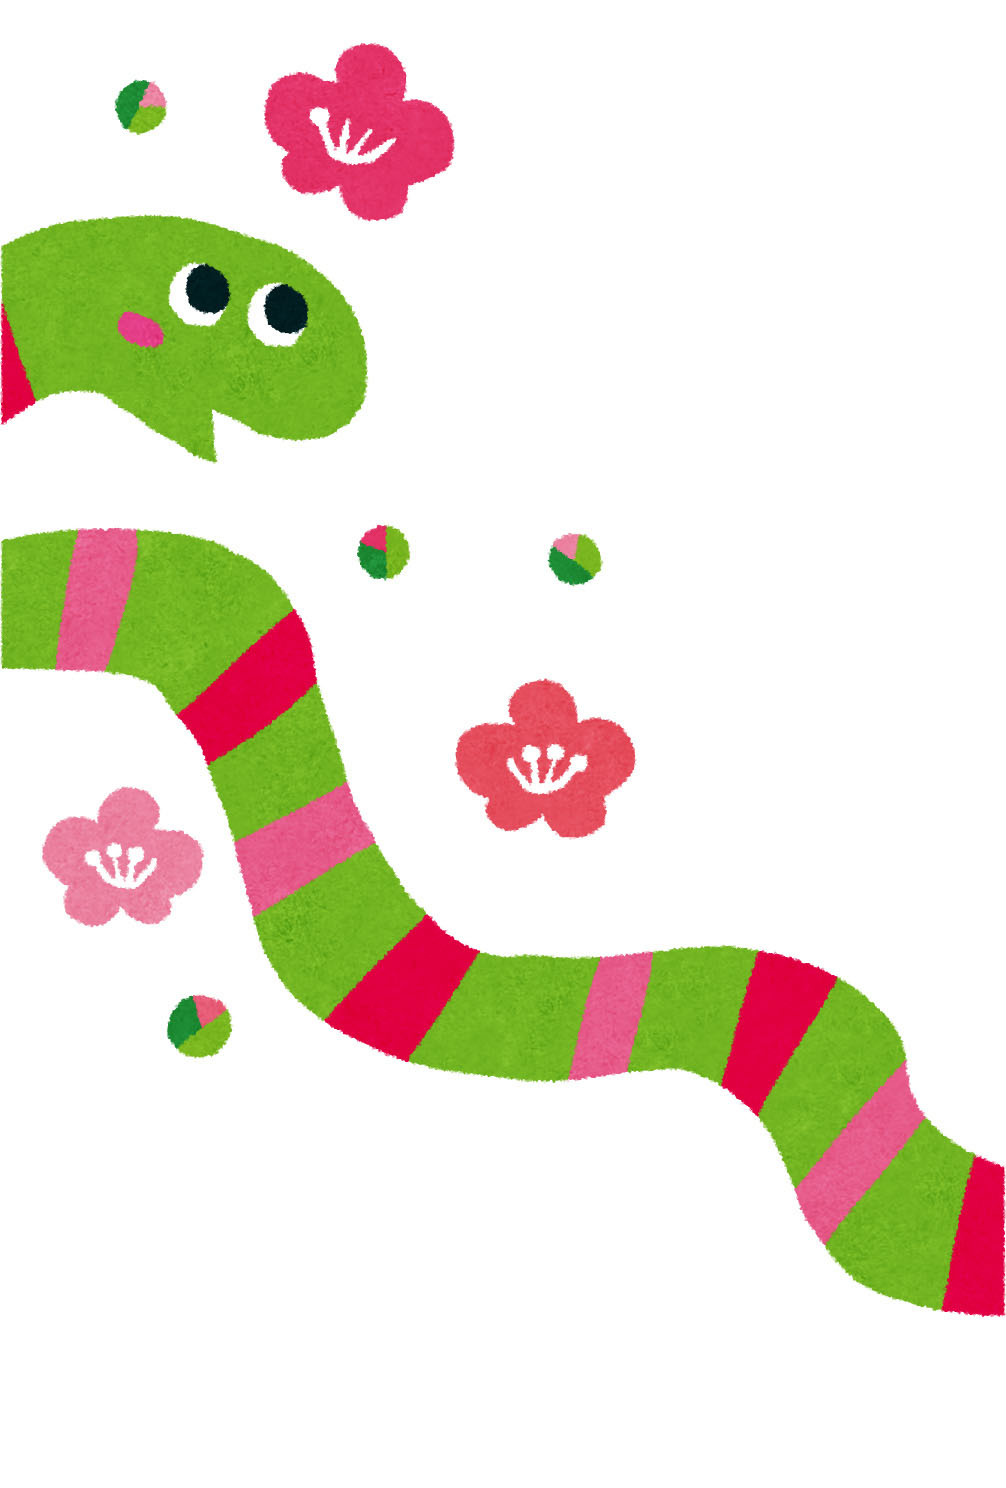 年賀状のテンプレート 緑の蛇と梅の花 かわいいフリー素材集 いらすとや